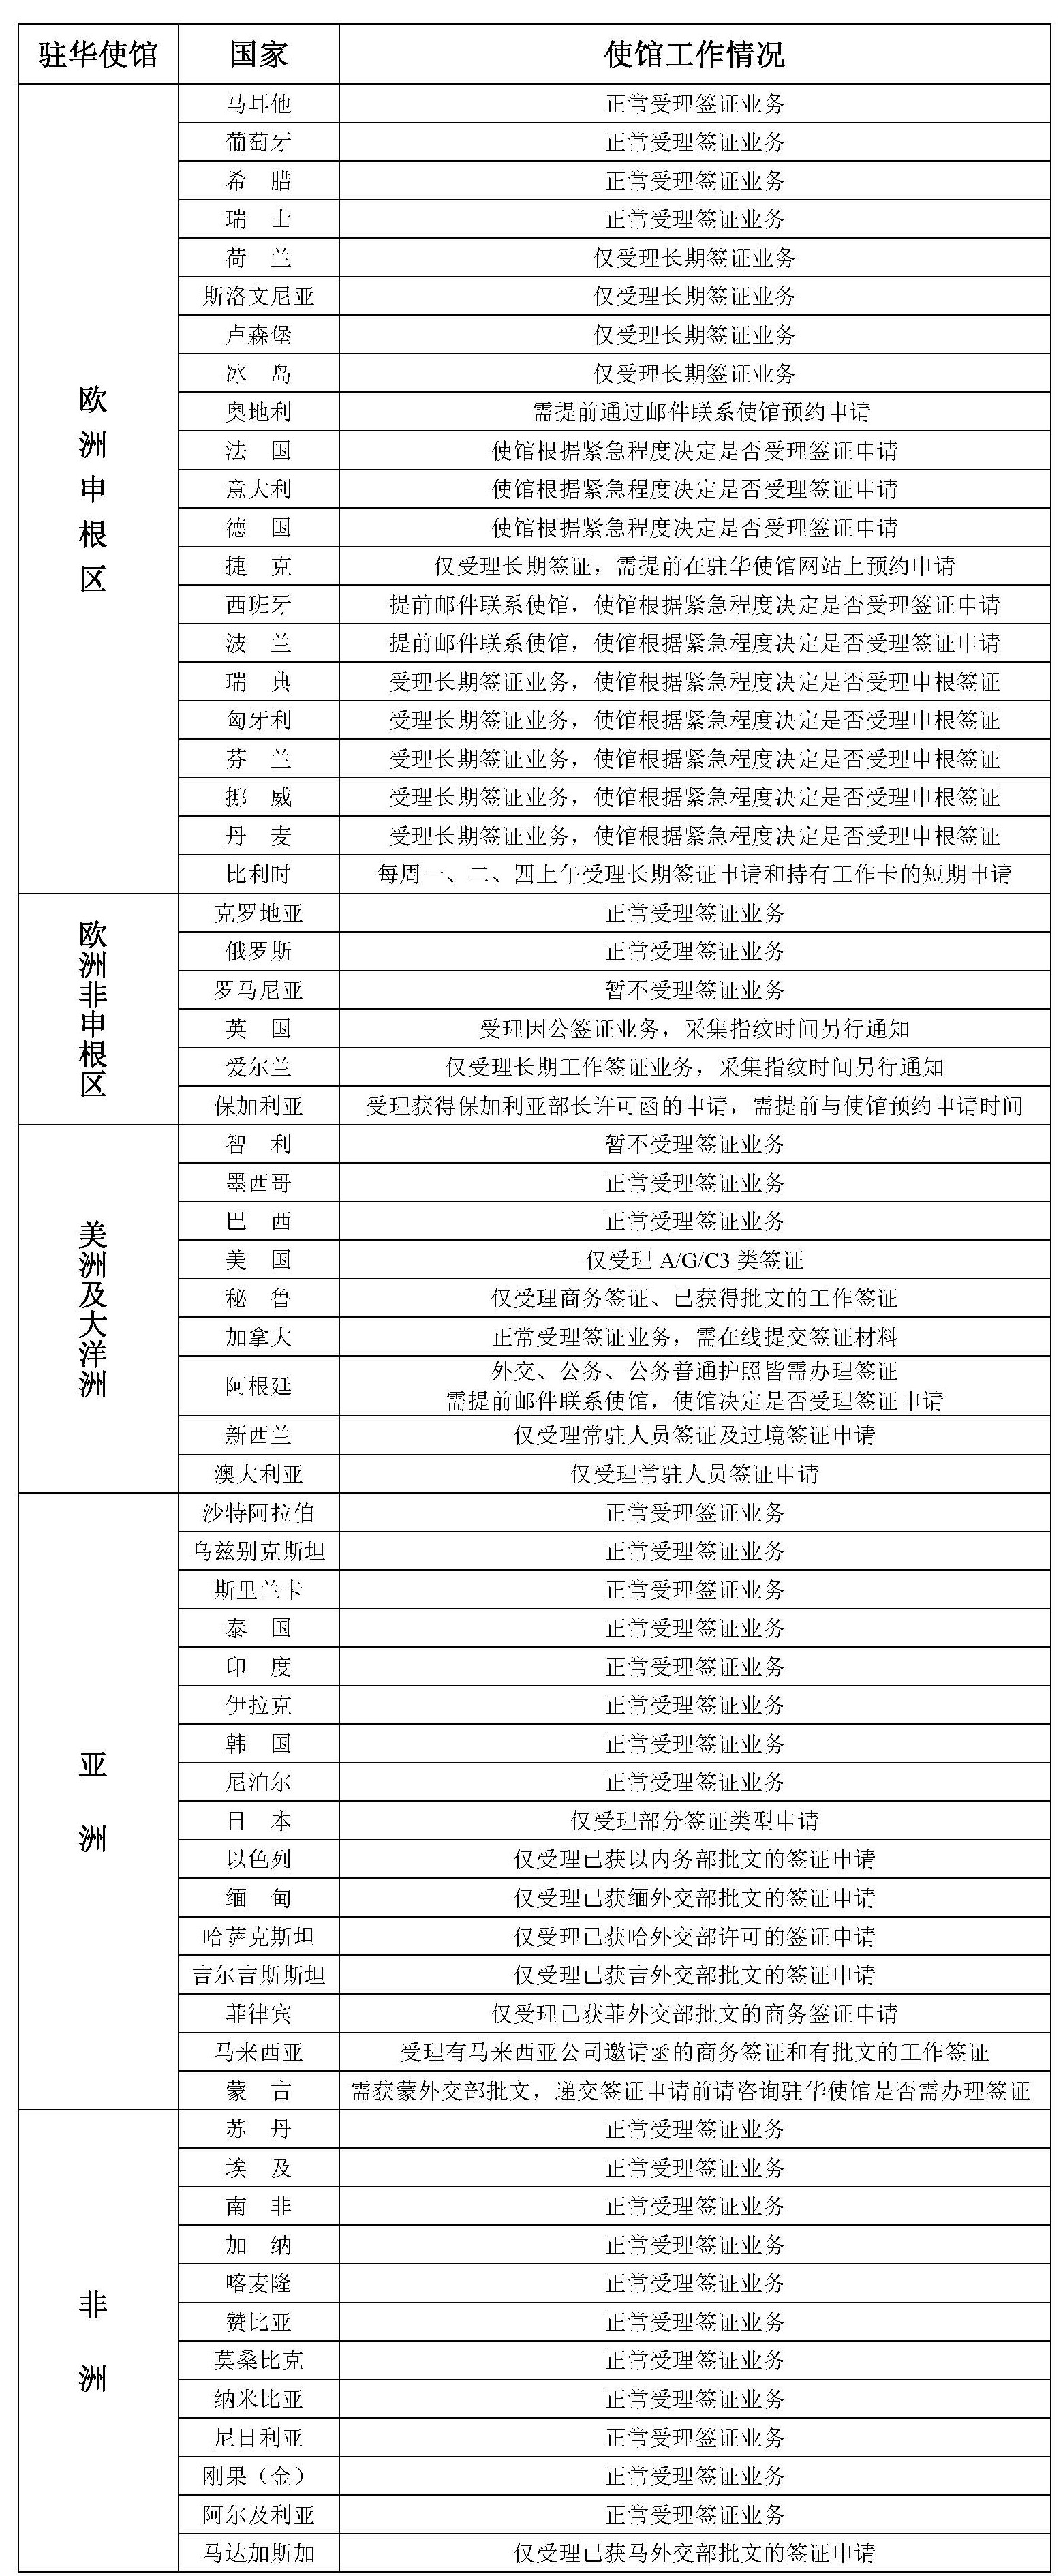 2021年8月30日部分驻华使馆工作情况统计表.jpg